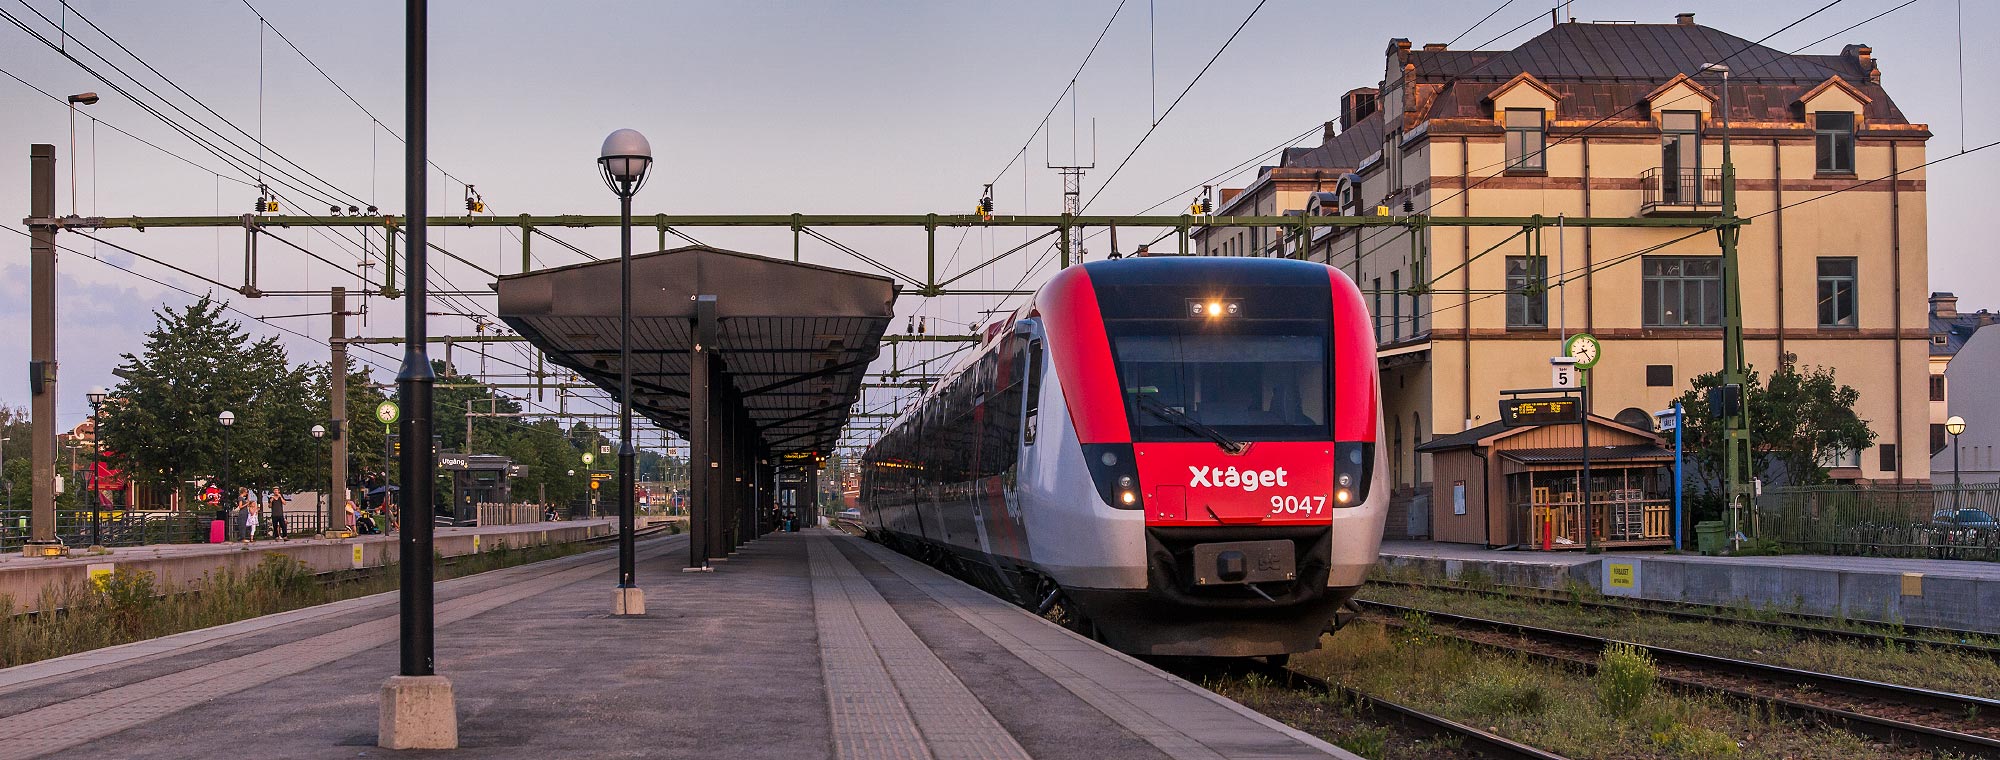 X-tåget inväntar avgång i Gävle en sommarkväll 2014